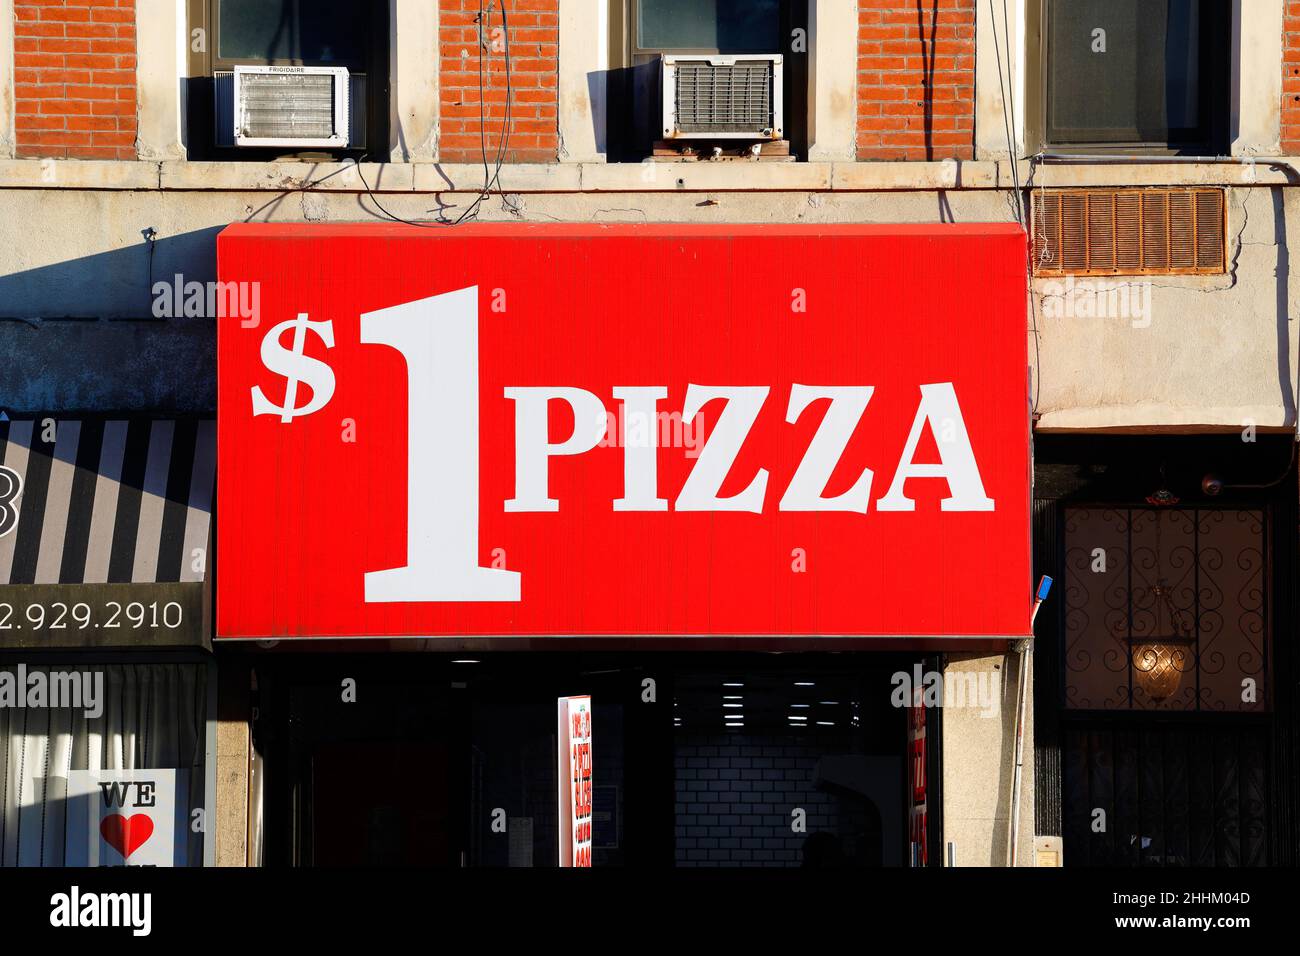 Eine Dollar Pizza Markise in einer 2 Bros Pizza Kette im Chelsea Viertel von Manhattan, New York, NY. Markise mit '$1 Pizza' in großen Buchstaben. Stockfoto